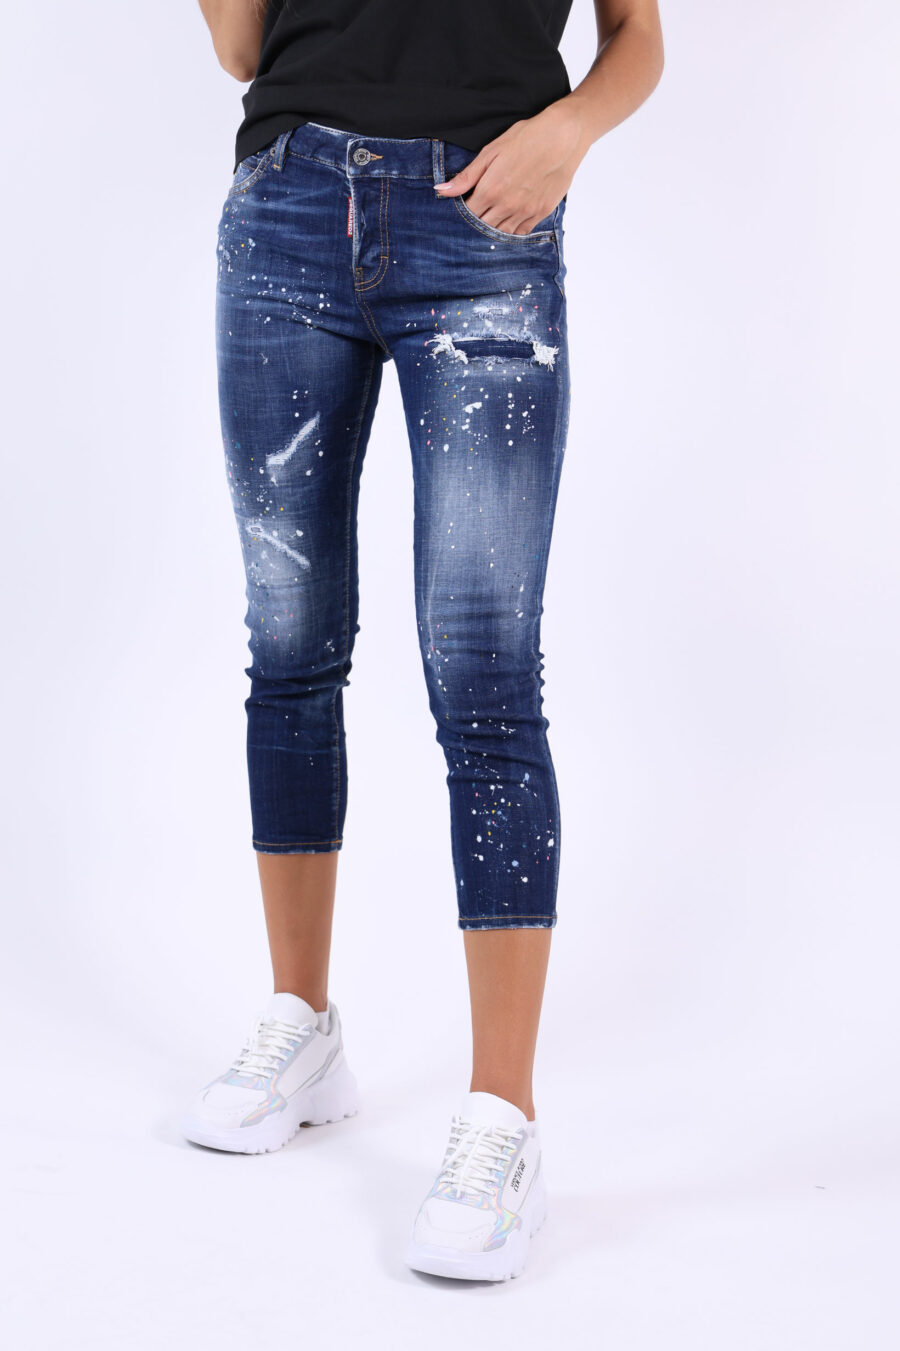 Pantalón vaquero "Cool girl cropped jean" azul desgastado con rotos - 361223054662202024